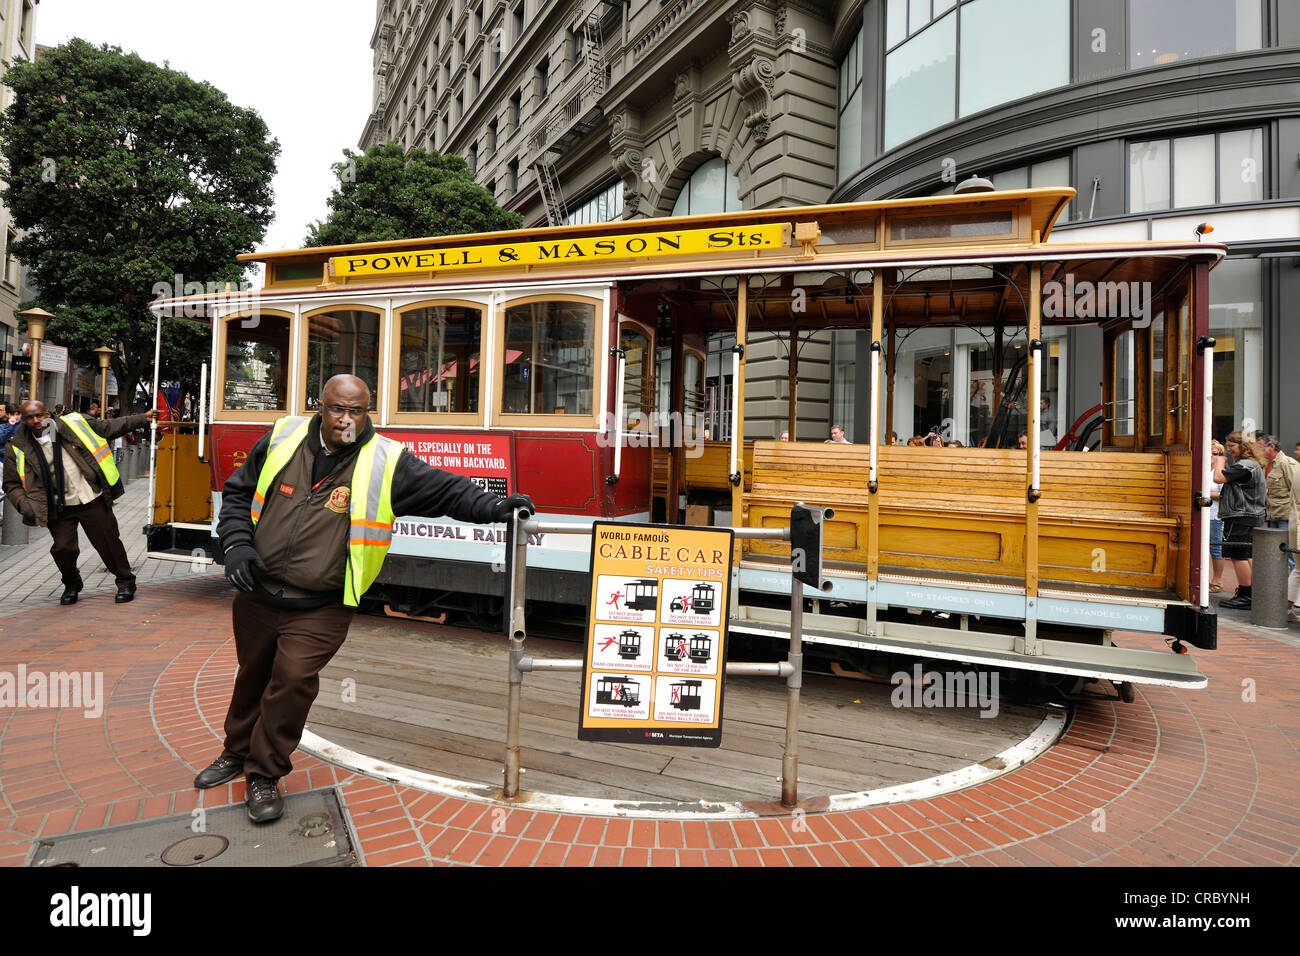 Las maniobras, punto de inflexión del Teleférico, cable, tranvía Powell y Mason Street, San Francisco, California Foto de stock